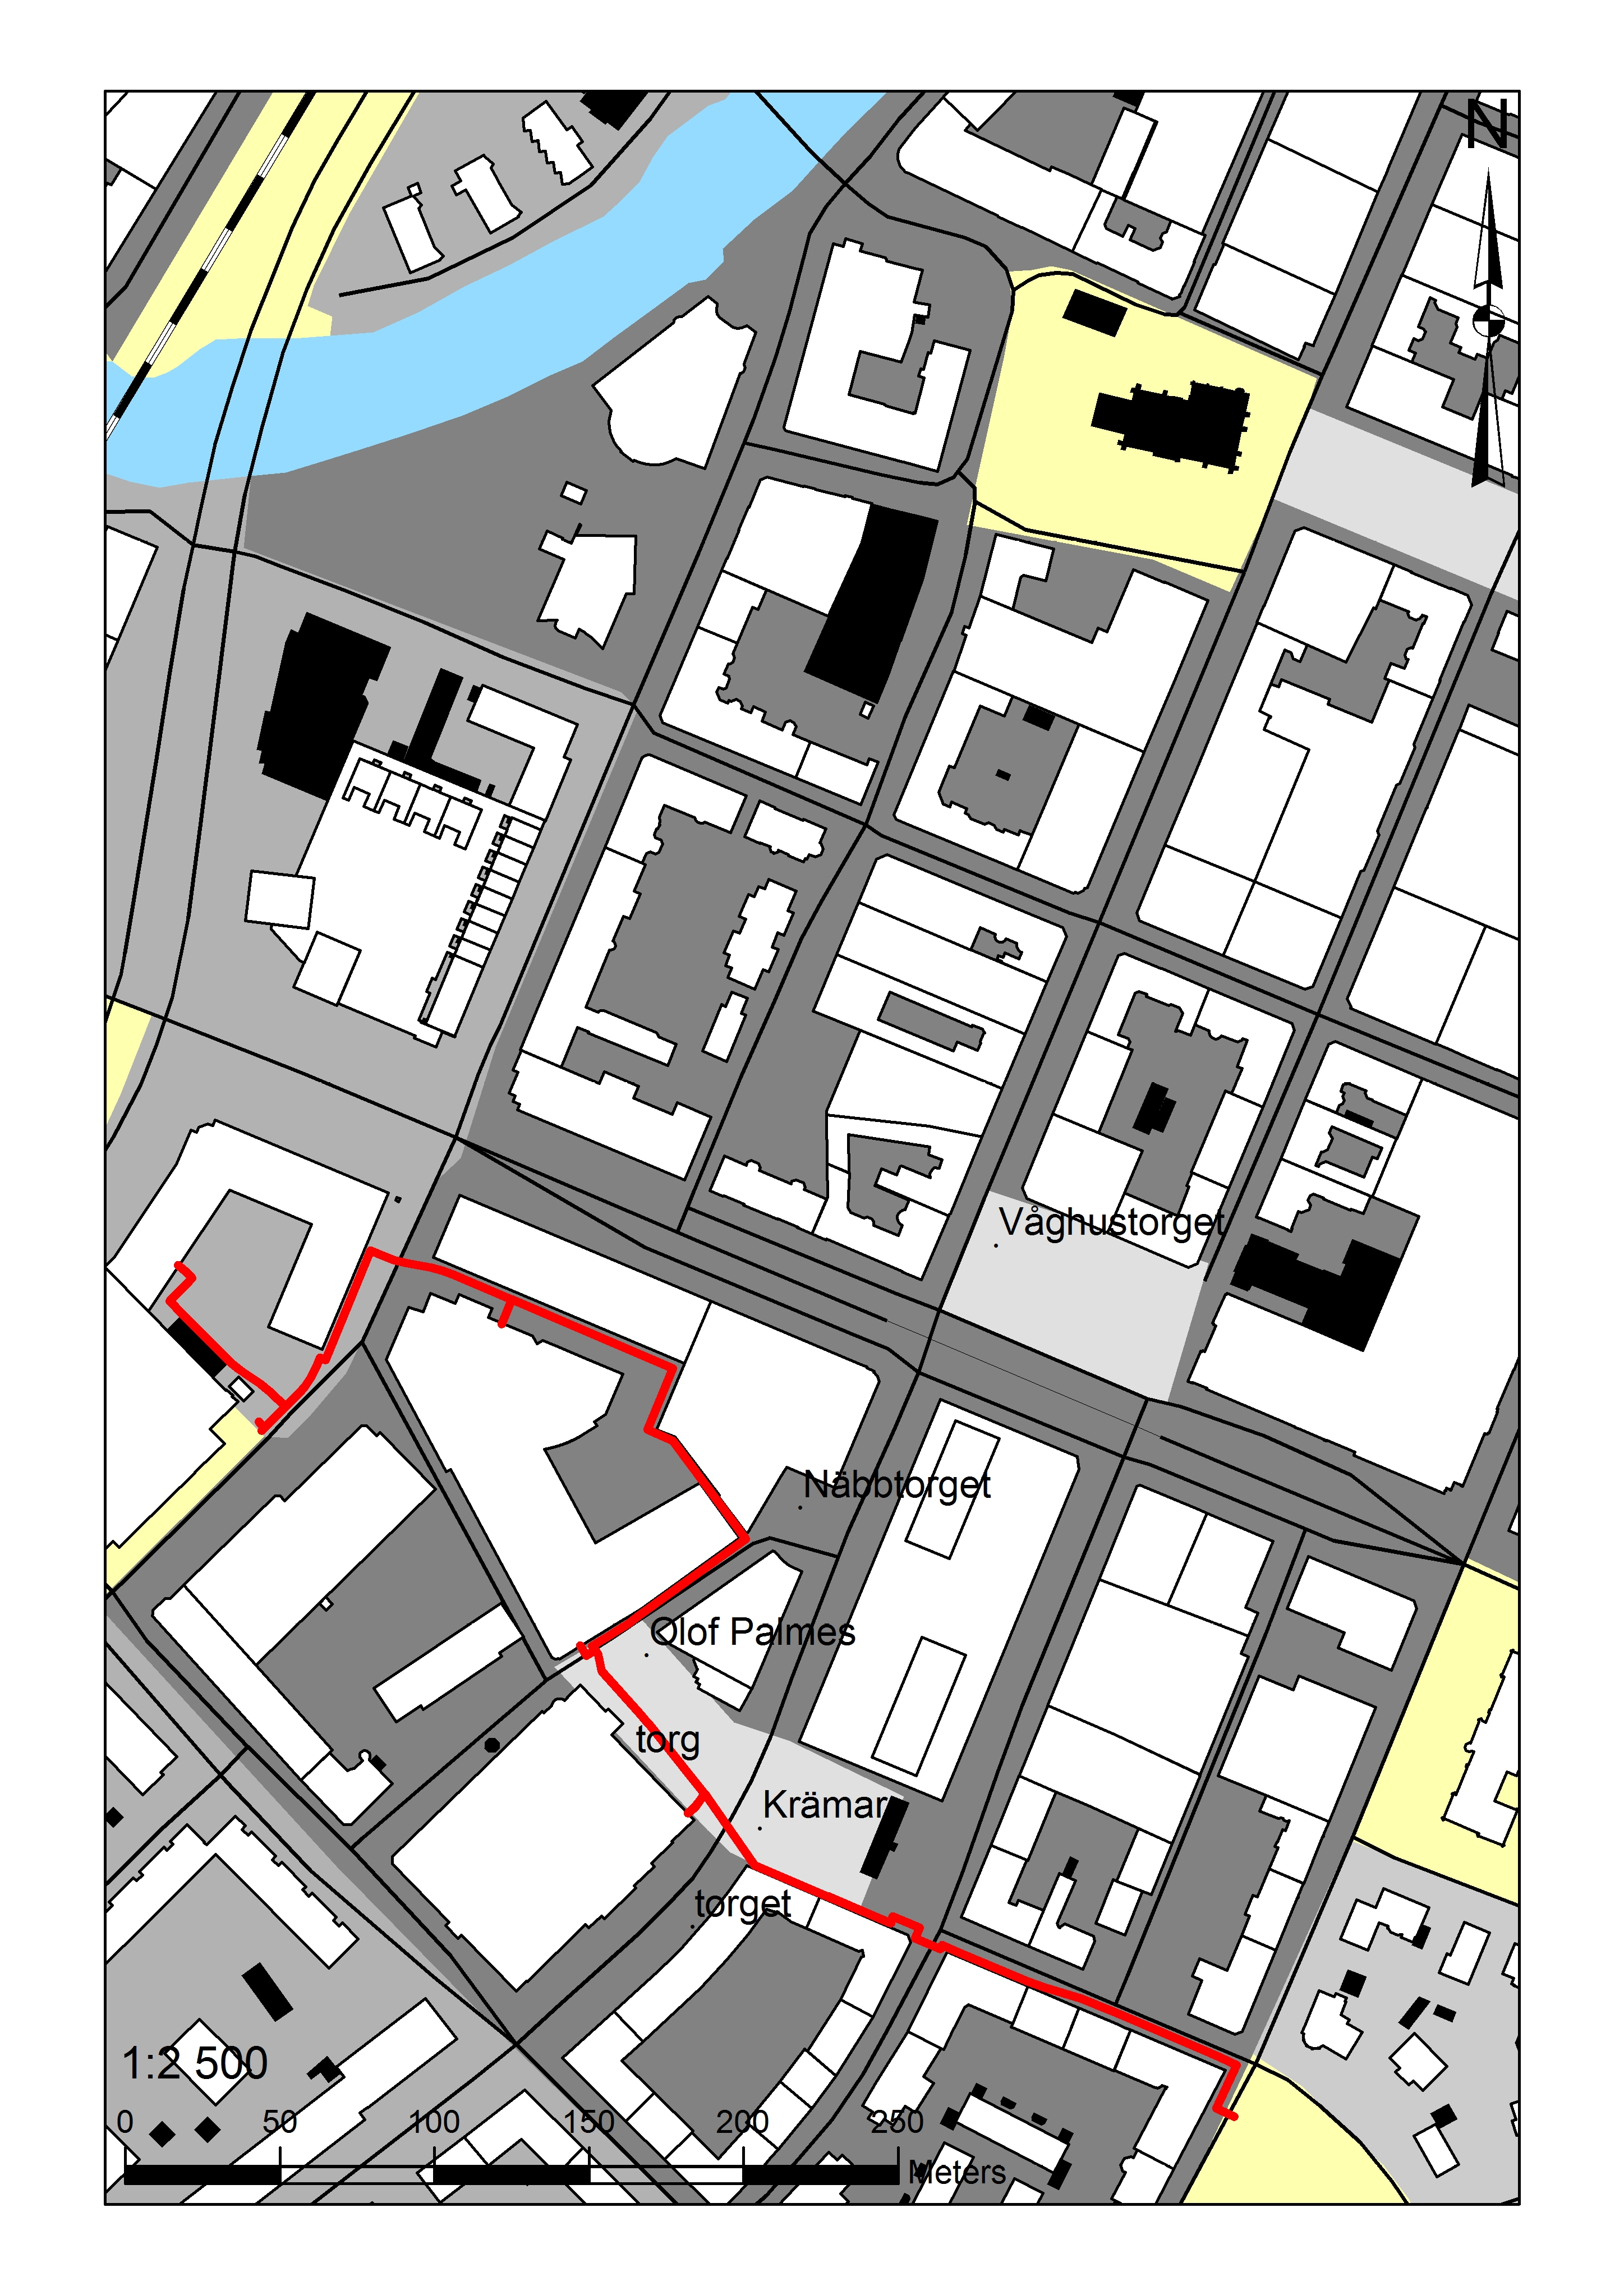 Arkeologgruppen rapport 203:03 Figur : Karta över Örebro kring RAÄ 83: med det aktuella